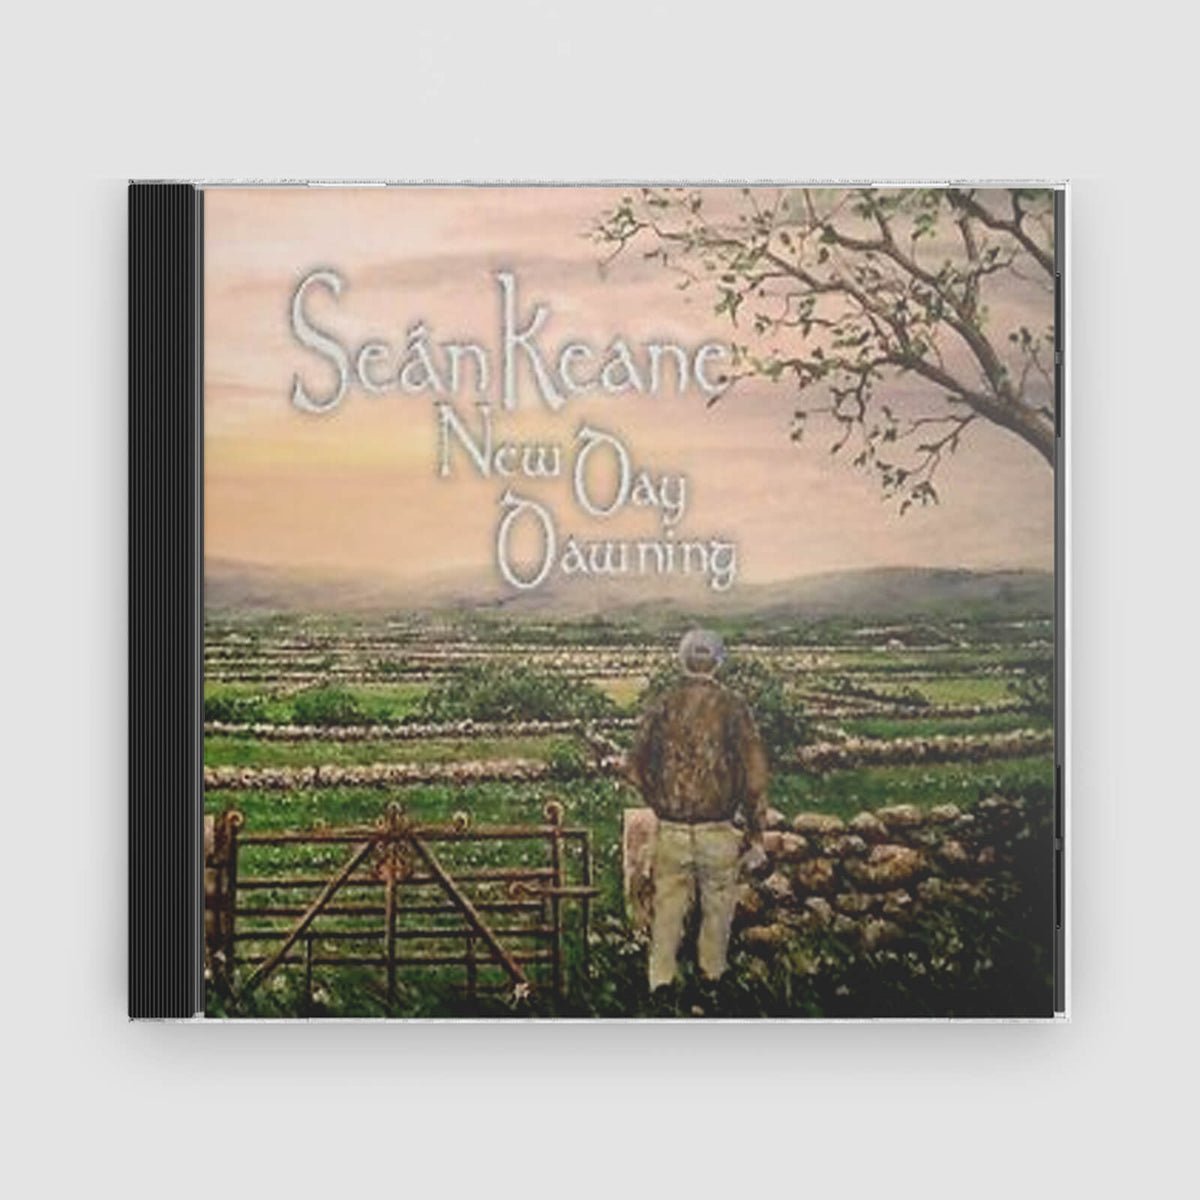 Sean Keane : A New Day Dawning